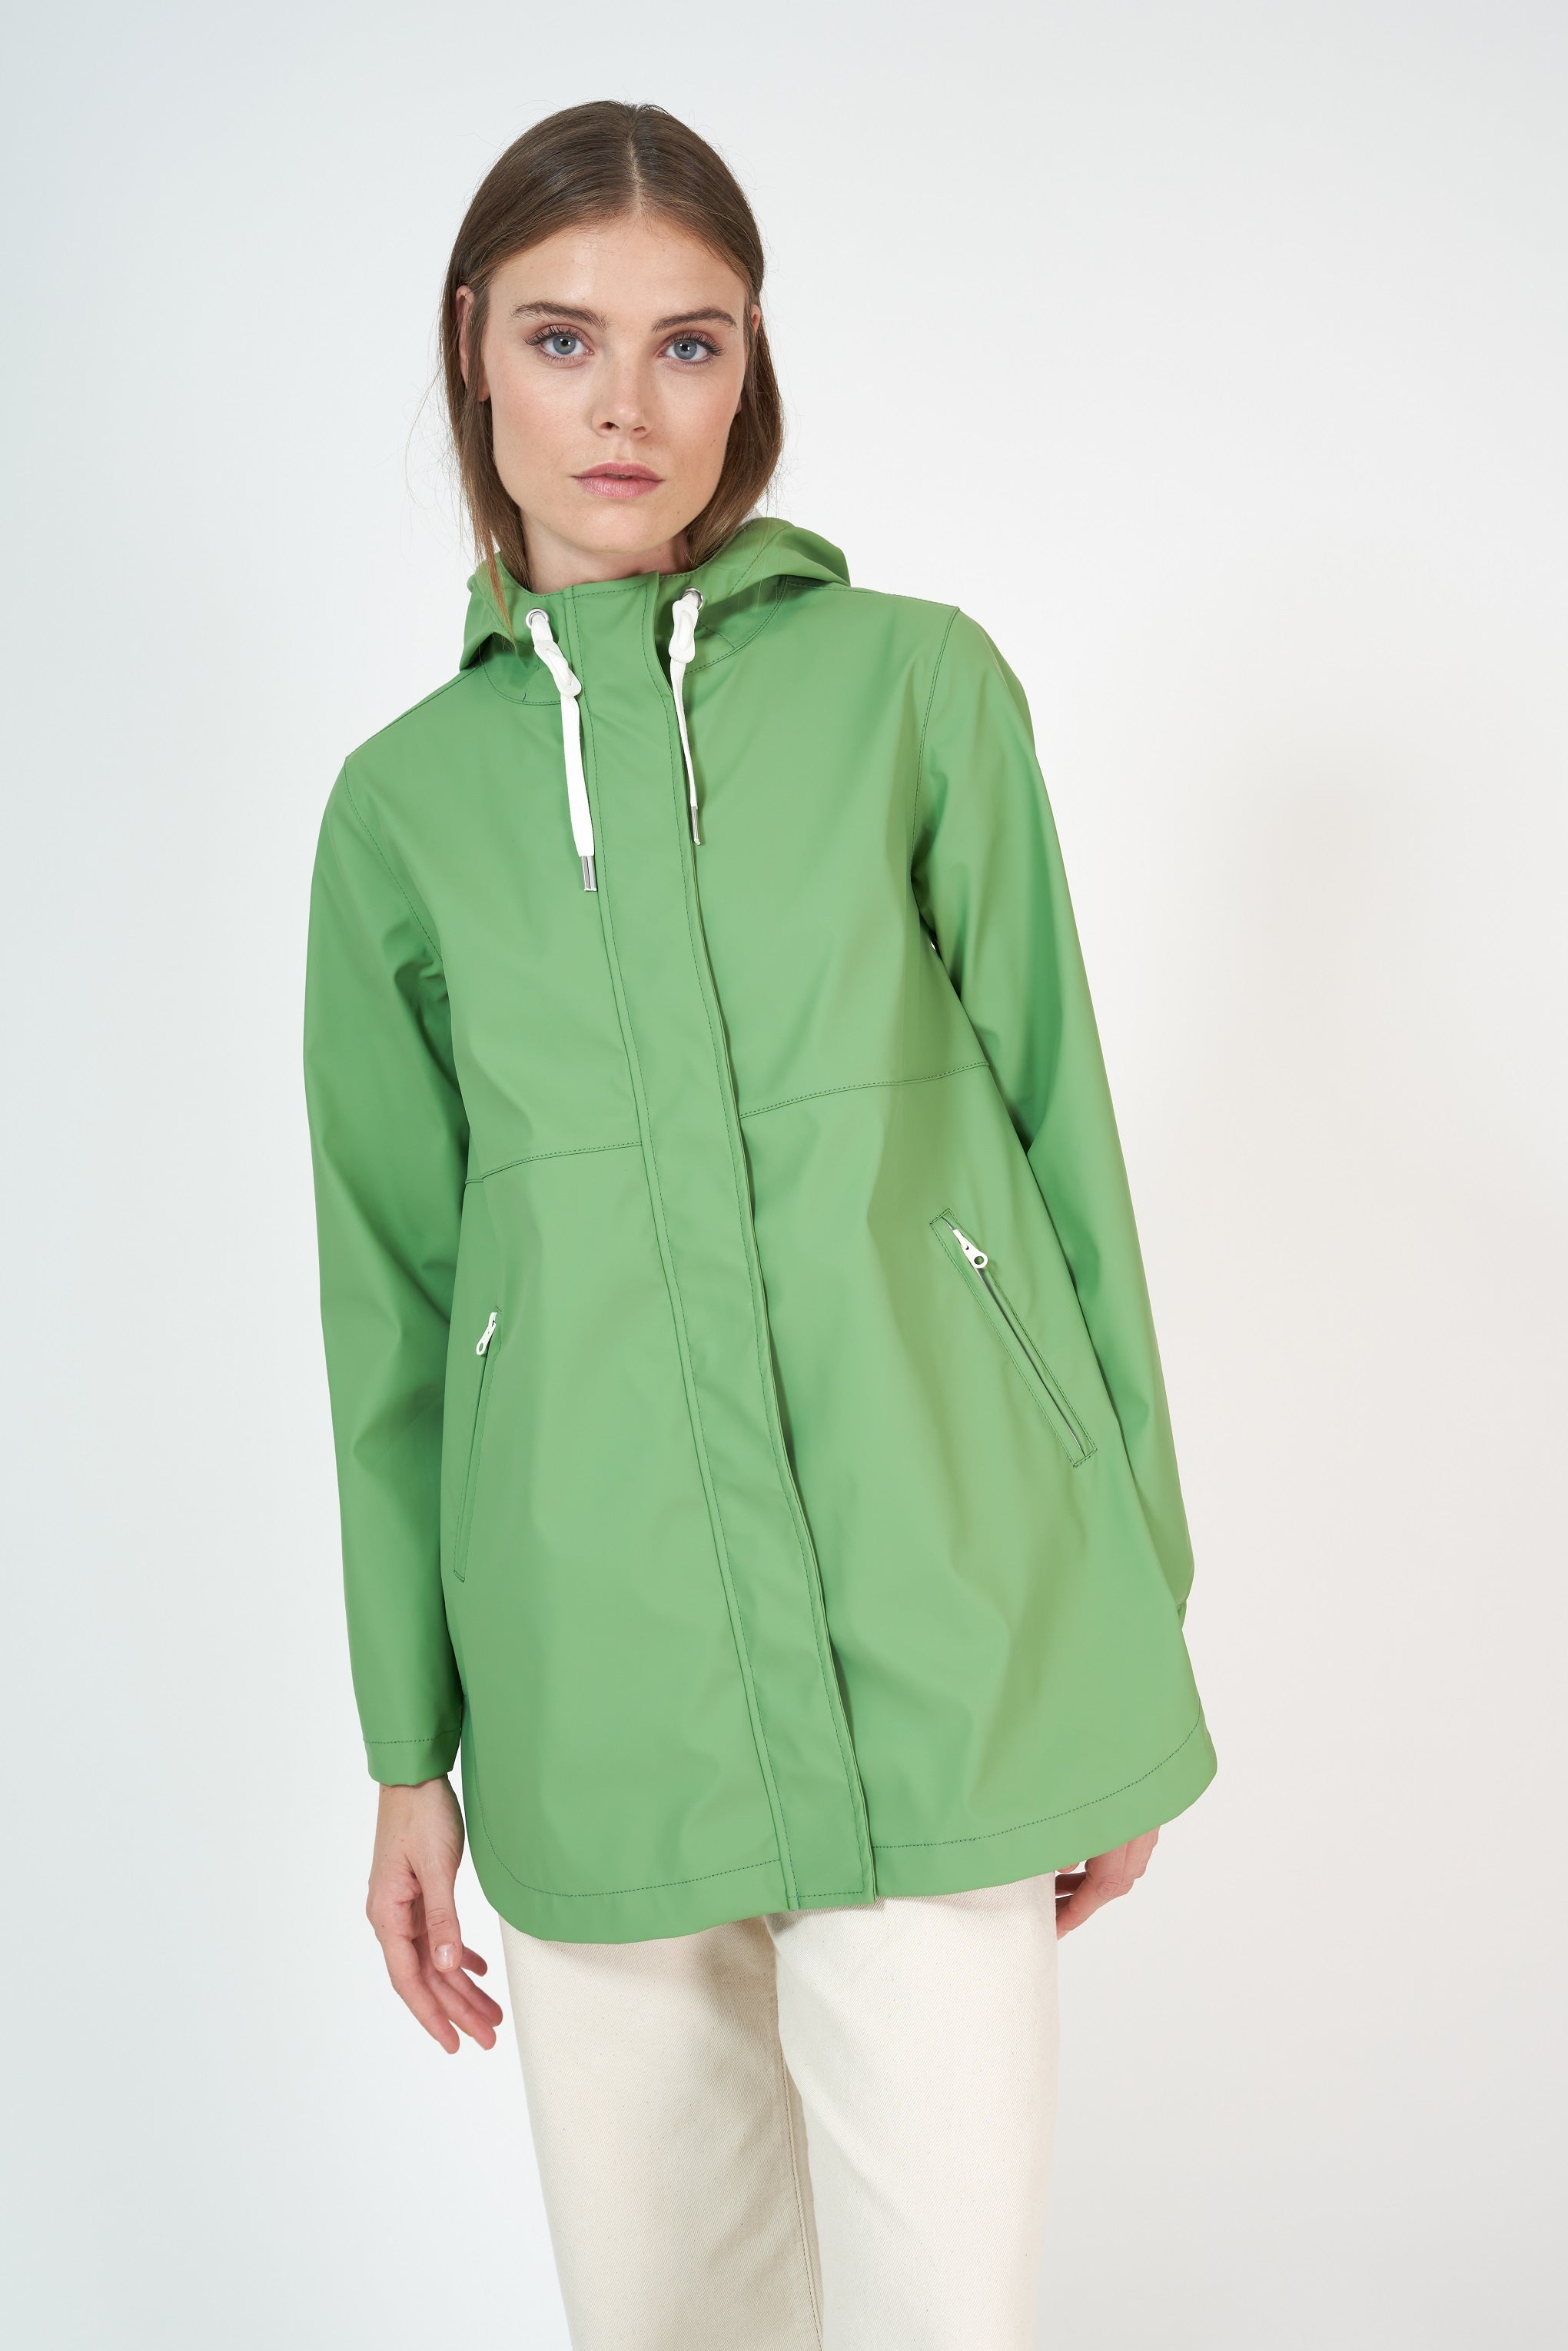 Waterproof Jacket Nuage - Turf Green